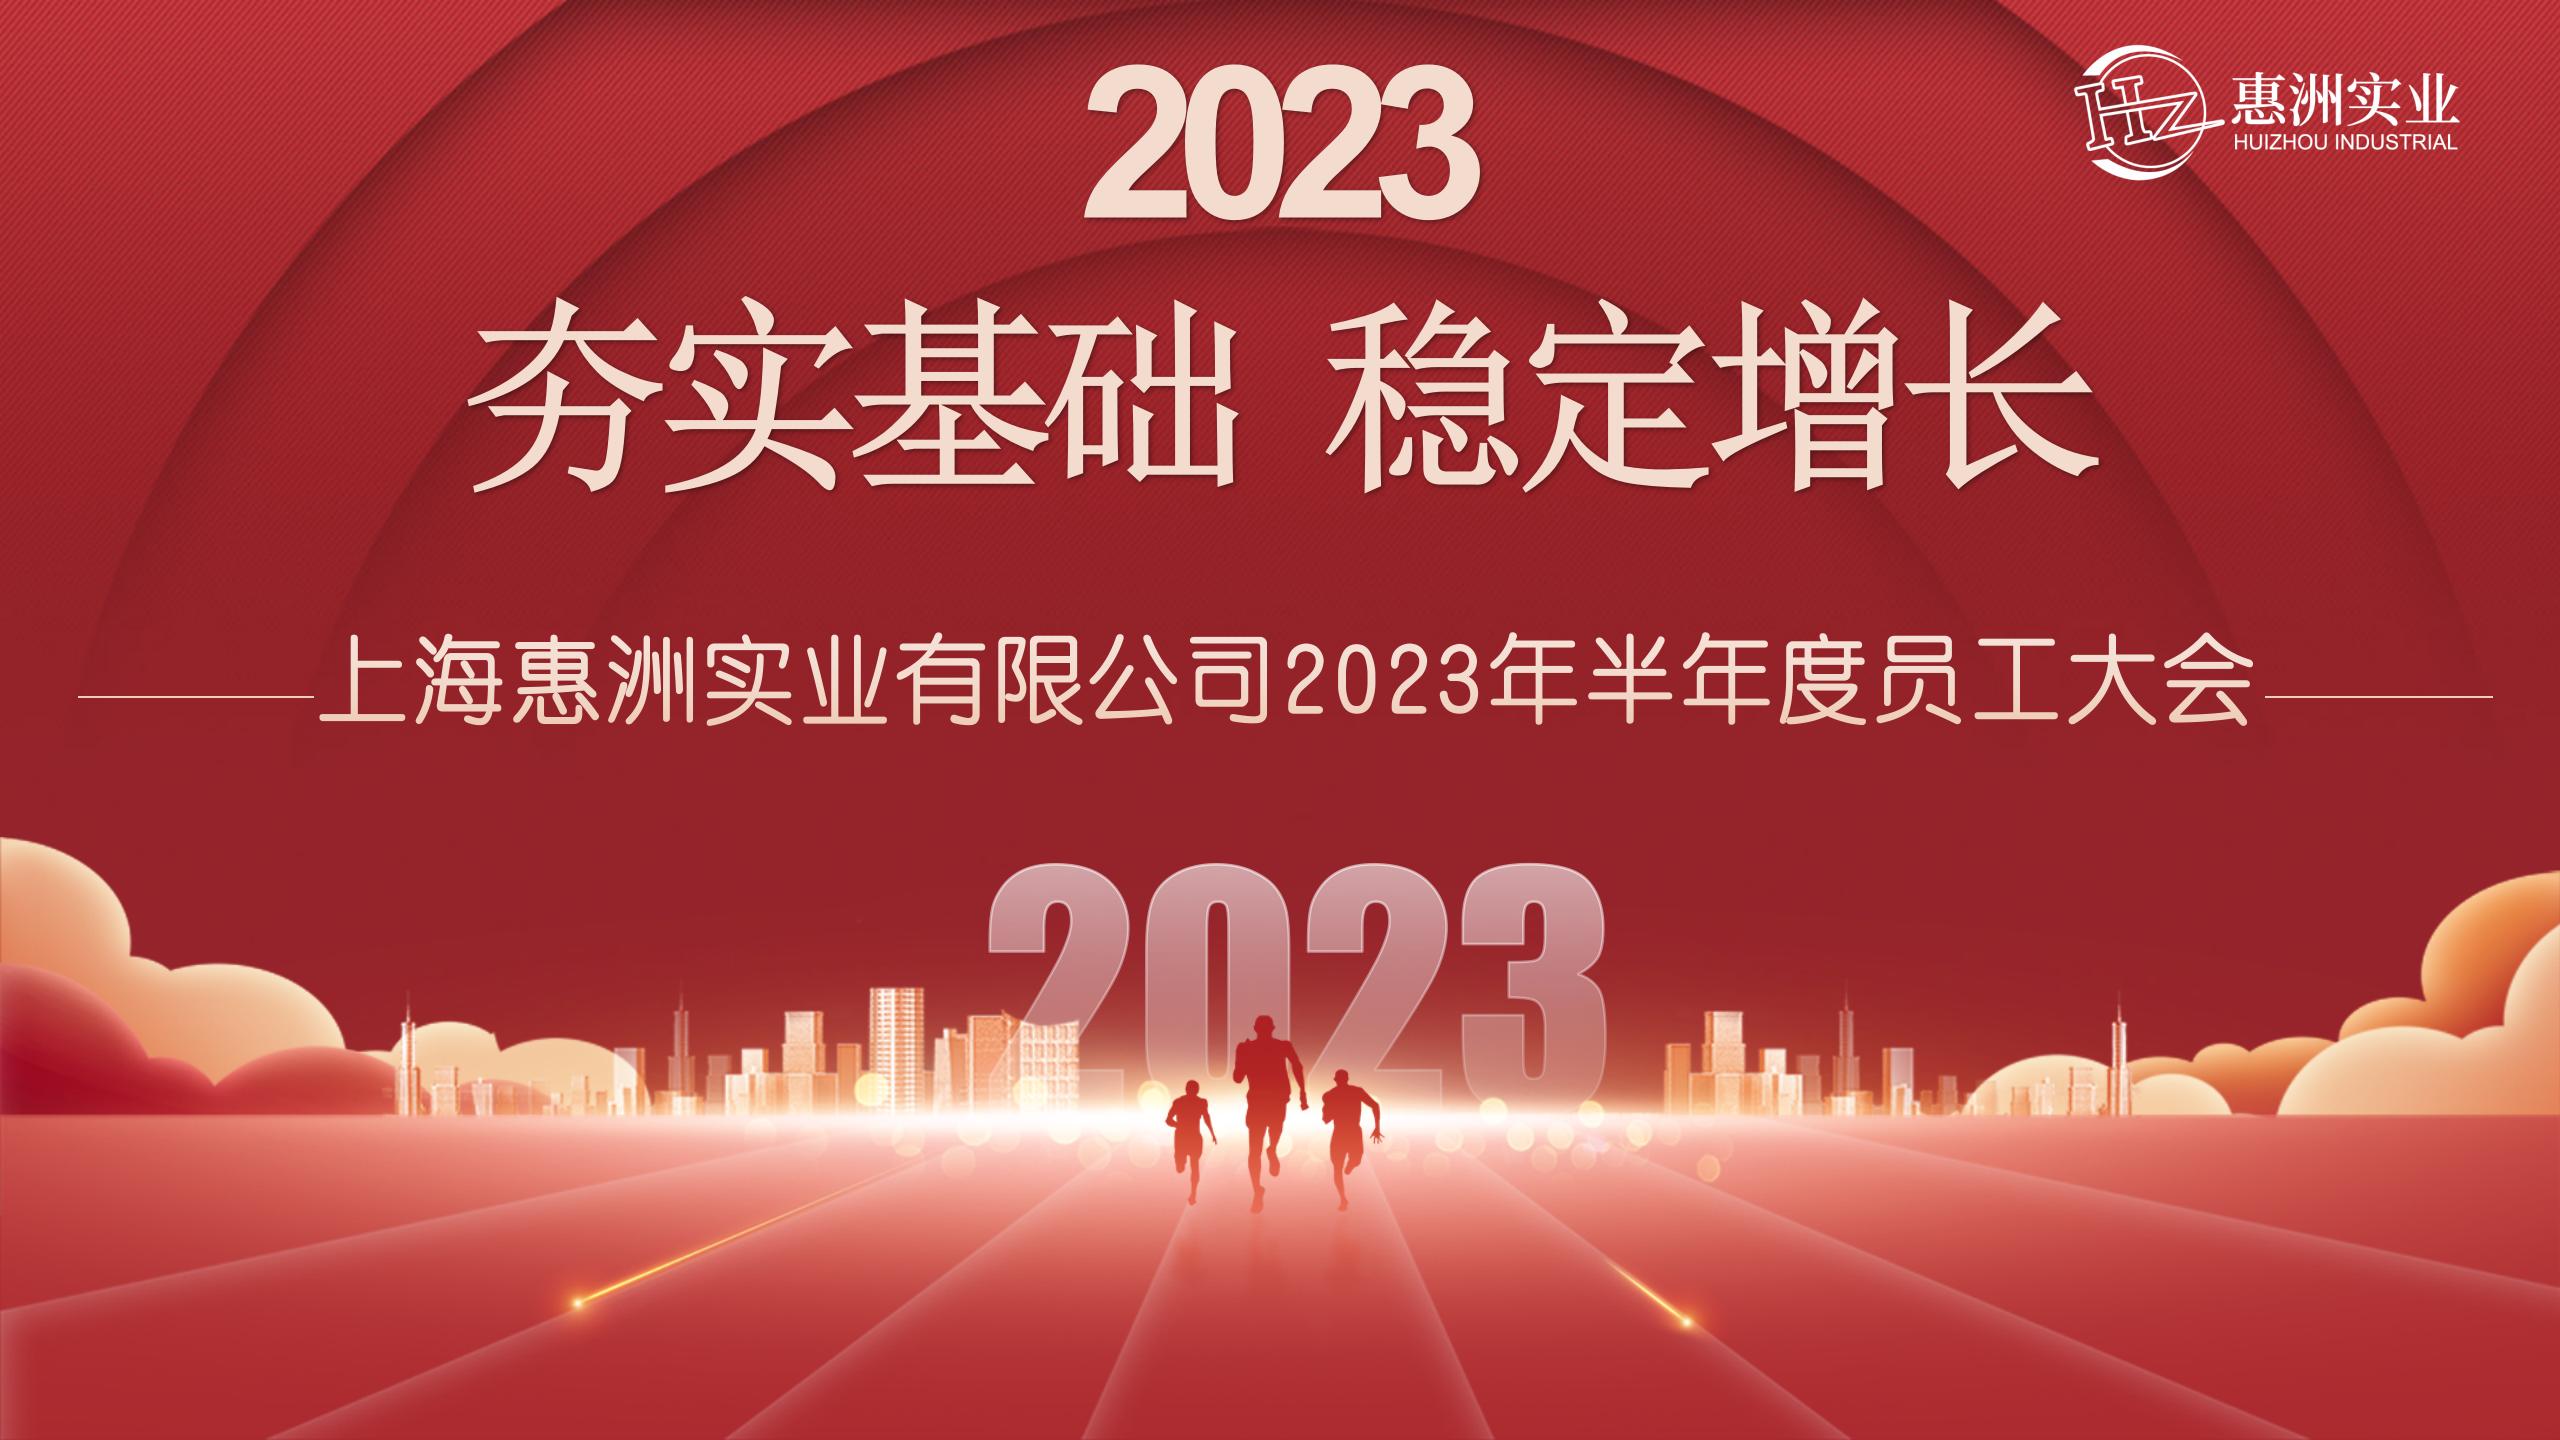 Rapat Staf Semi-taunan Huizhou 2023 |